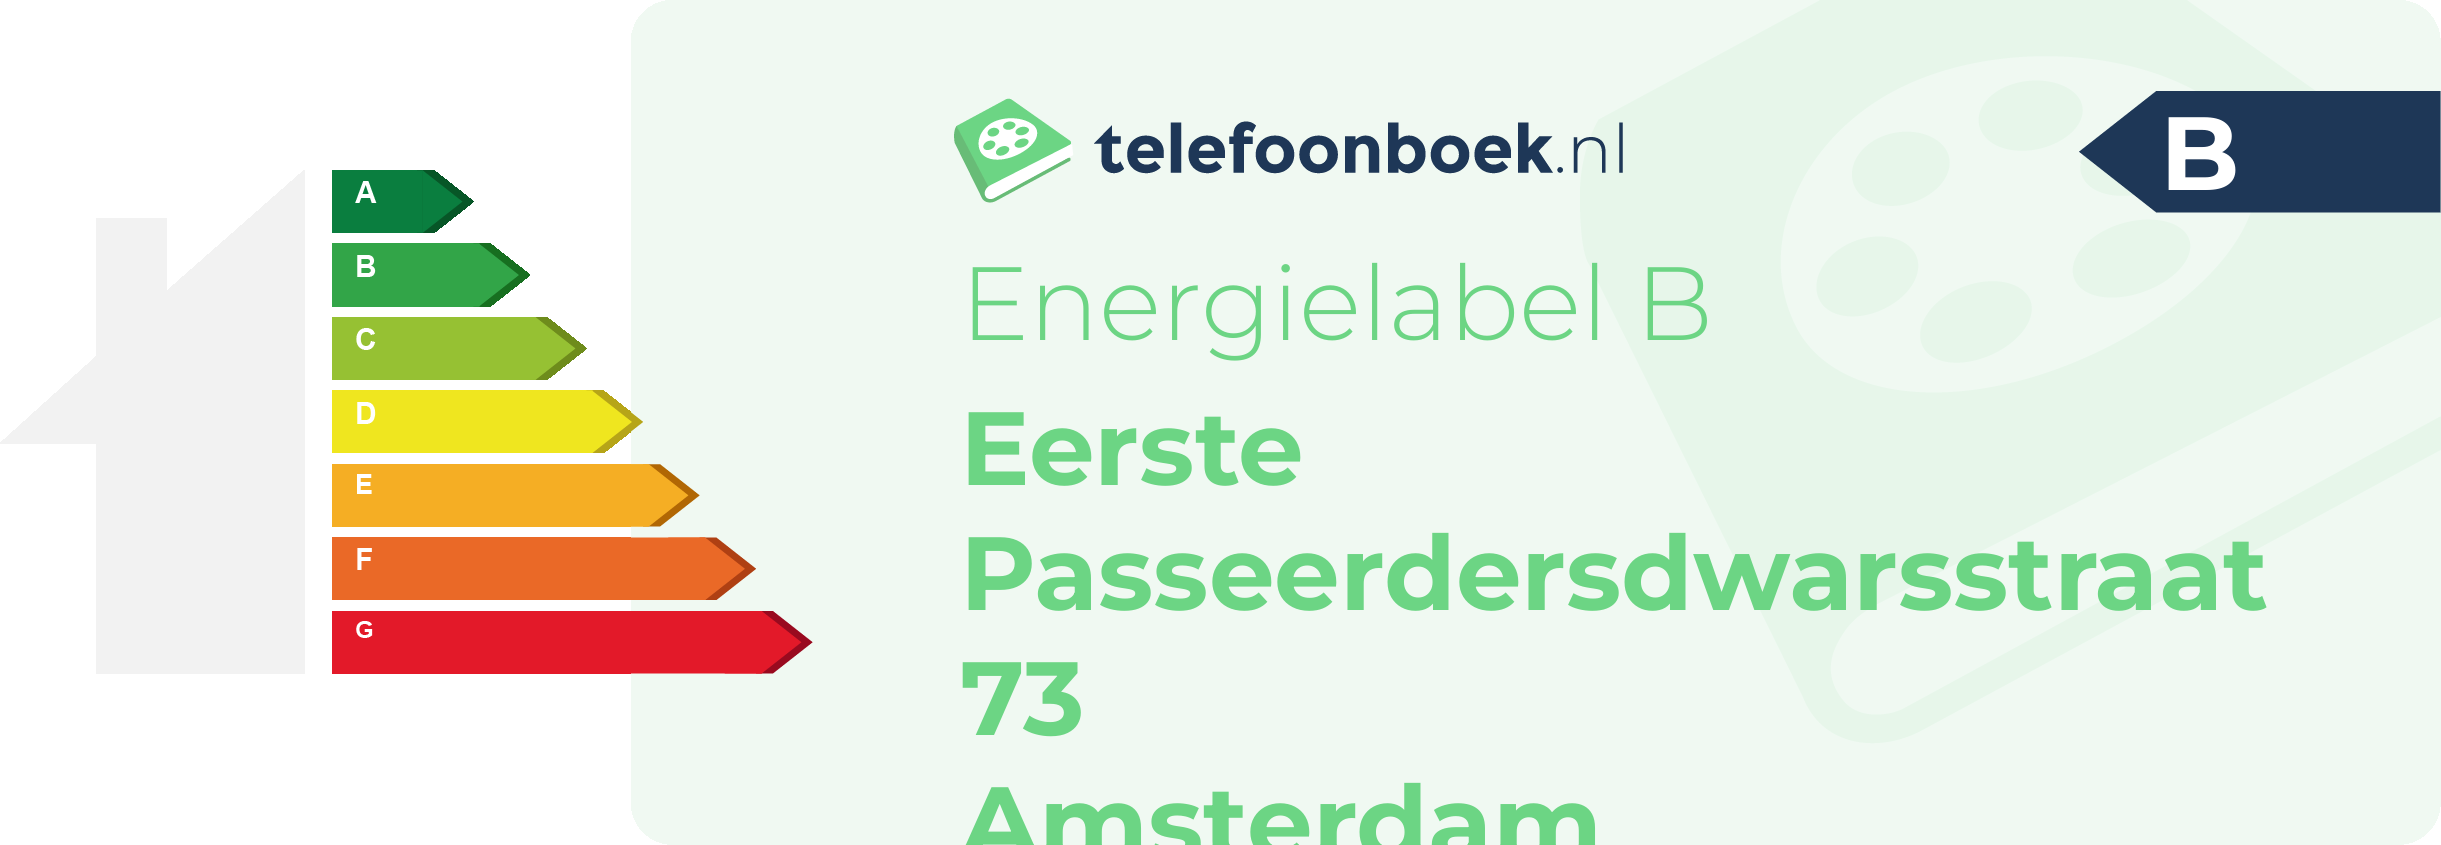 Energielabel Eerste Passeerdersdwarsstraat 73 Amsterdam